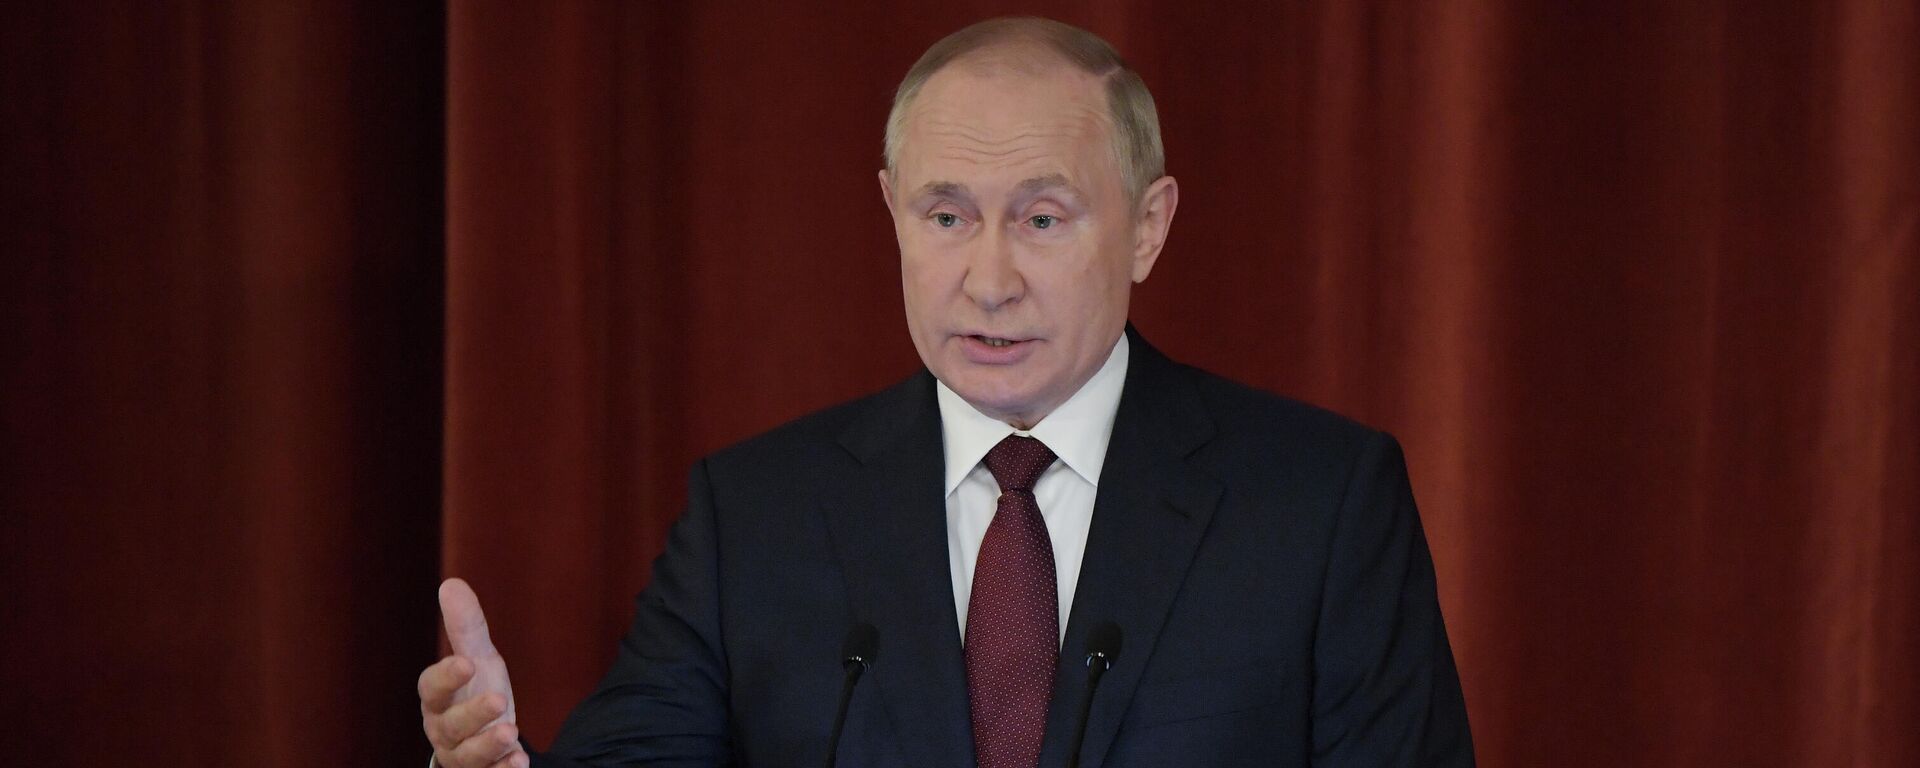 Vladimir Putin, presidente russo, participa de reunião do Ministério das Relações Exteriores da Rússia, 18 de novembro de 2021 - Sputnik Brasil, 1920, 18.11.2021